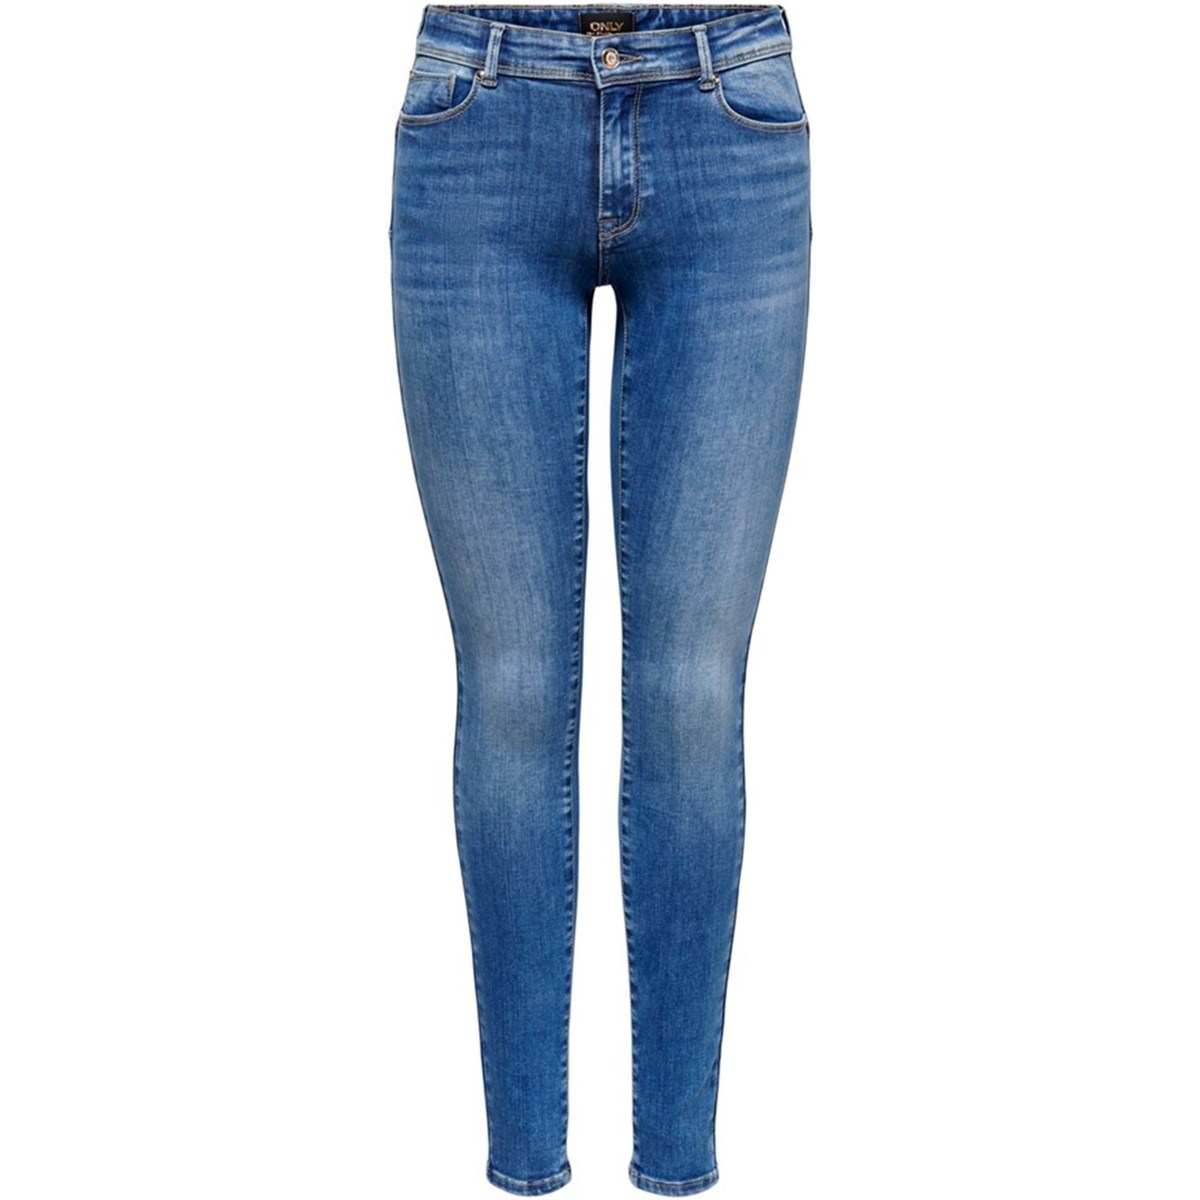 Abbigliamento Donna Jeans skynny Only 15235025-30 Nero